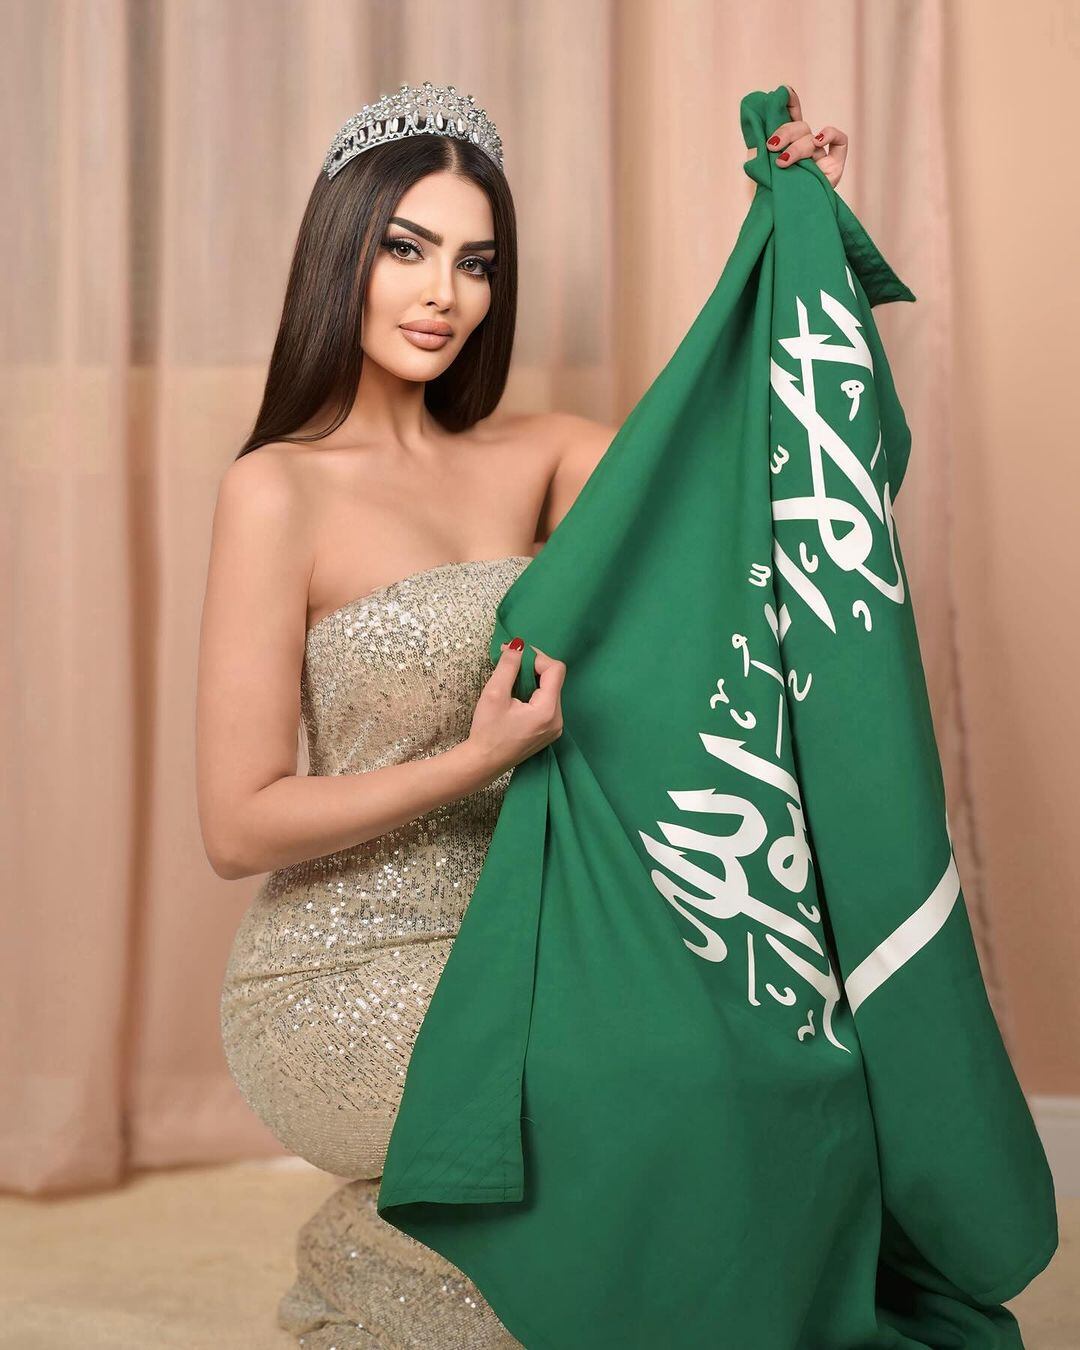 Rumy al Qahtani, la primera representante de Arabia Saudita, debutará en el Miss Universo el próximo 28 de setiembre en México, donde se llevará a cabo el concurso.